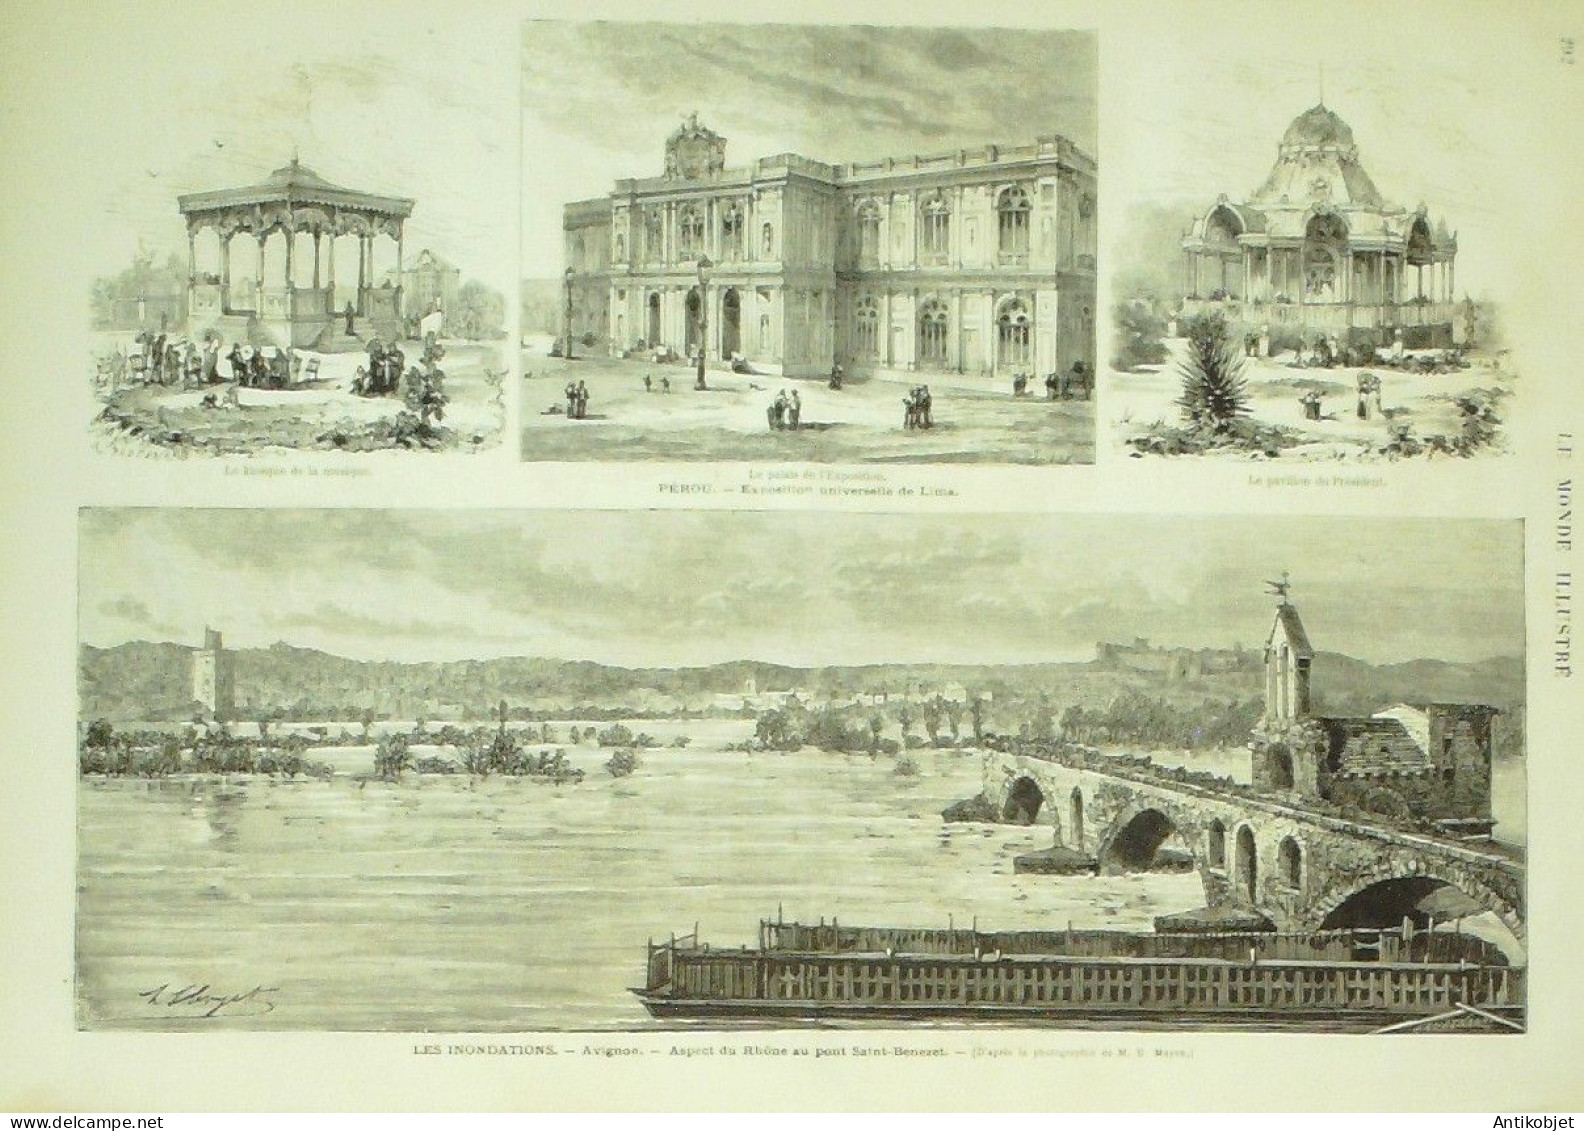 Le Monde illustré 1872 n°813 Cochinchine Annamite Pérou Lima Avignon (84) ST-Benezet